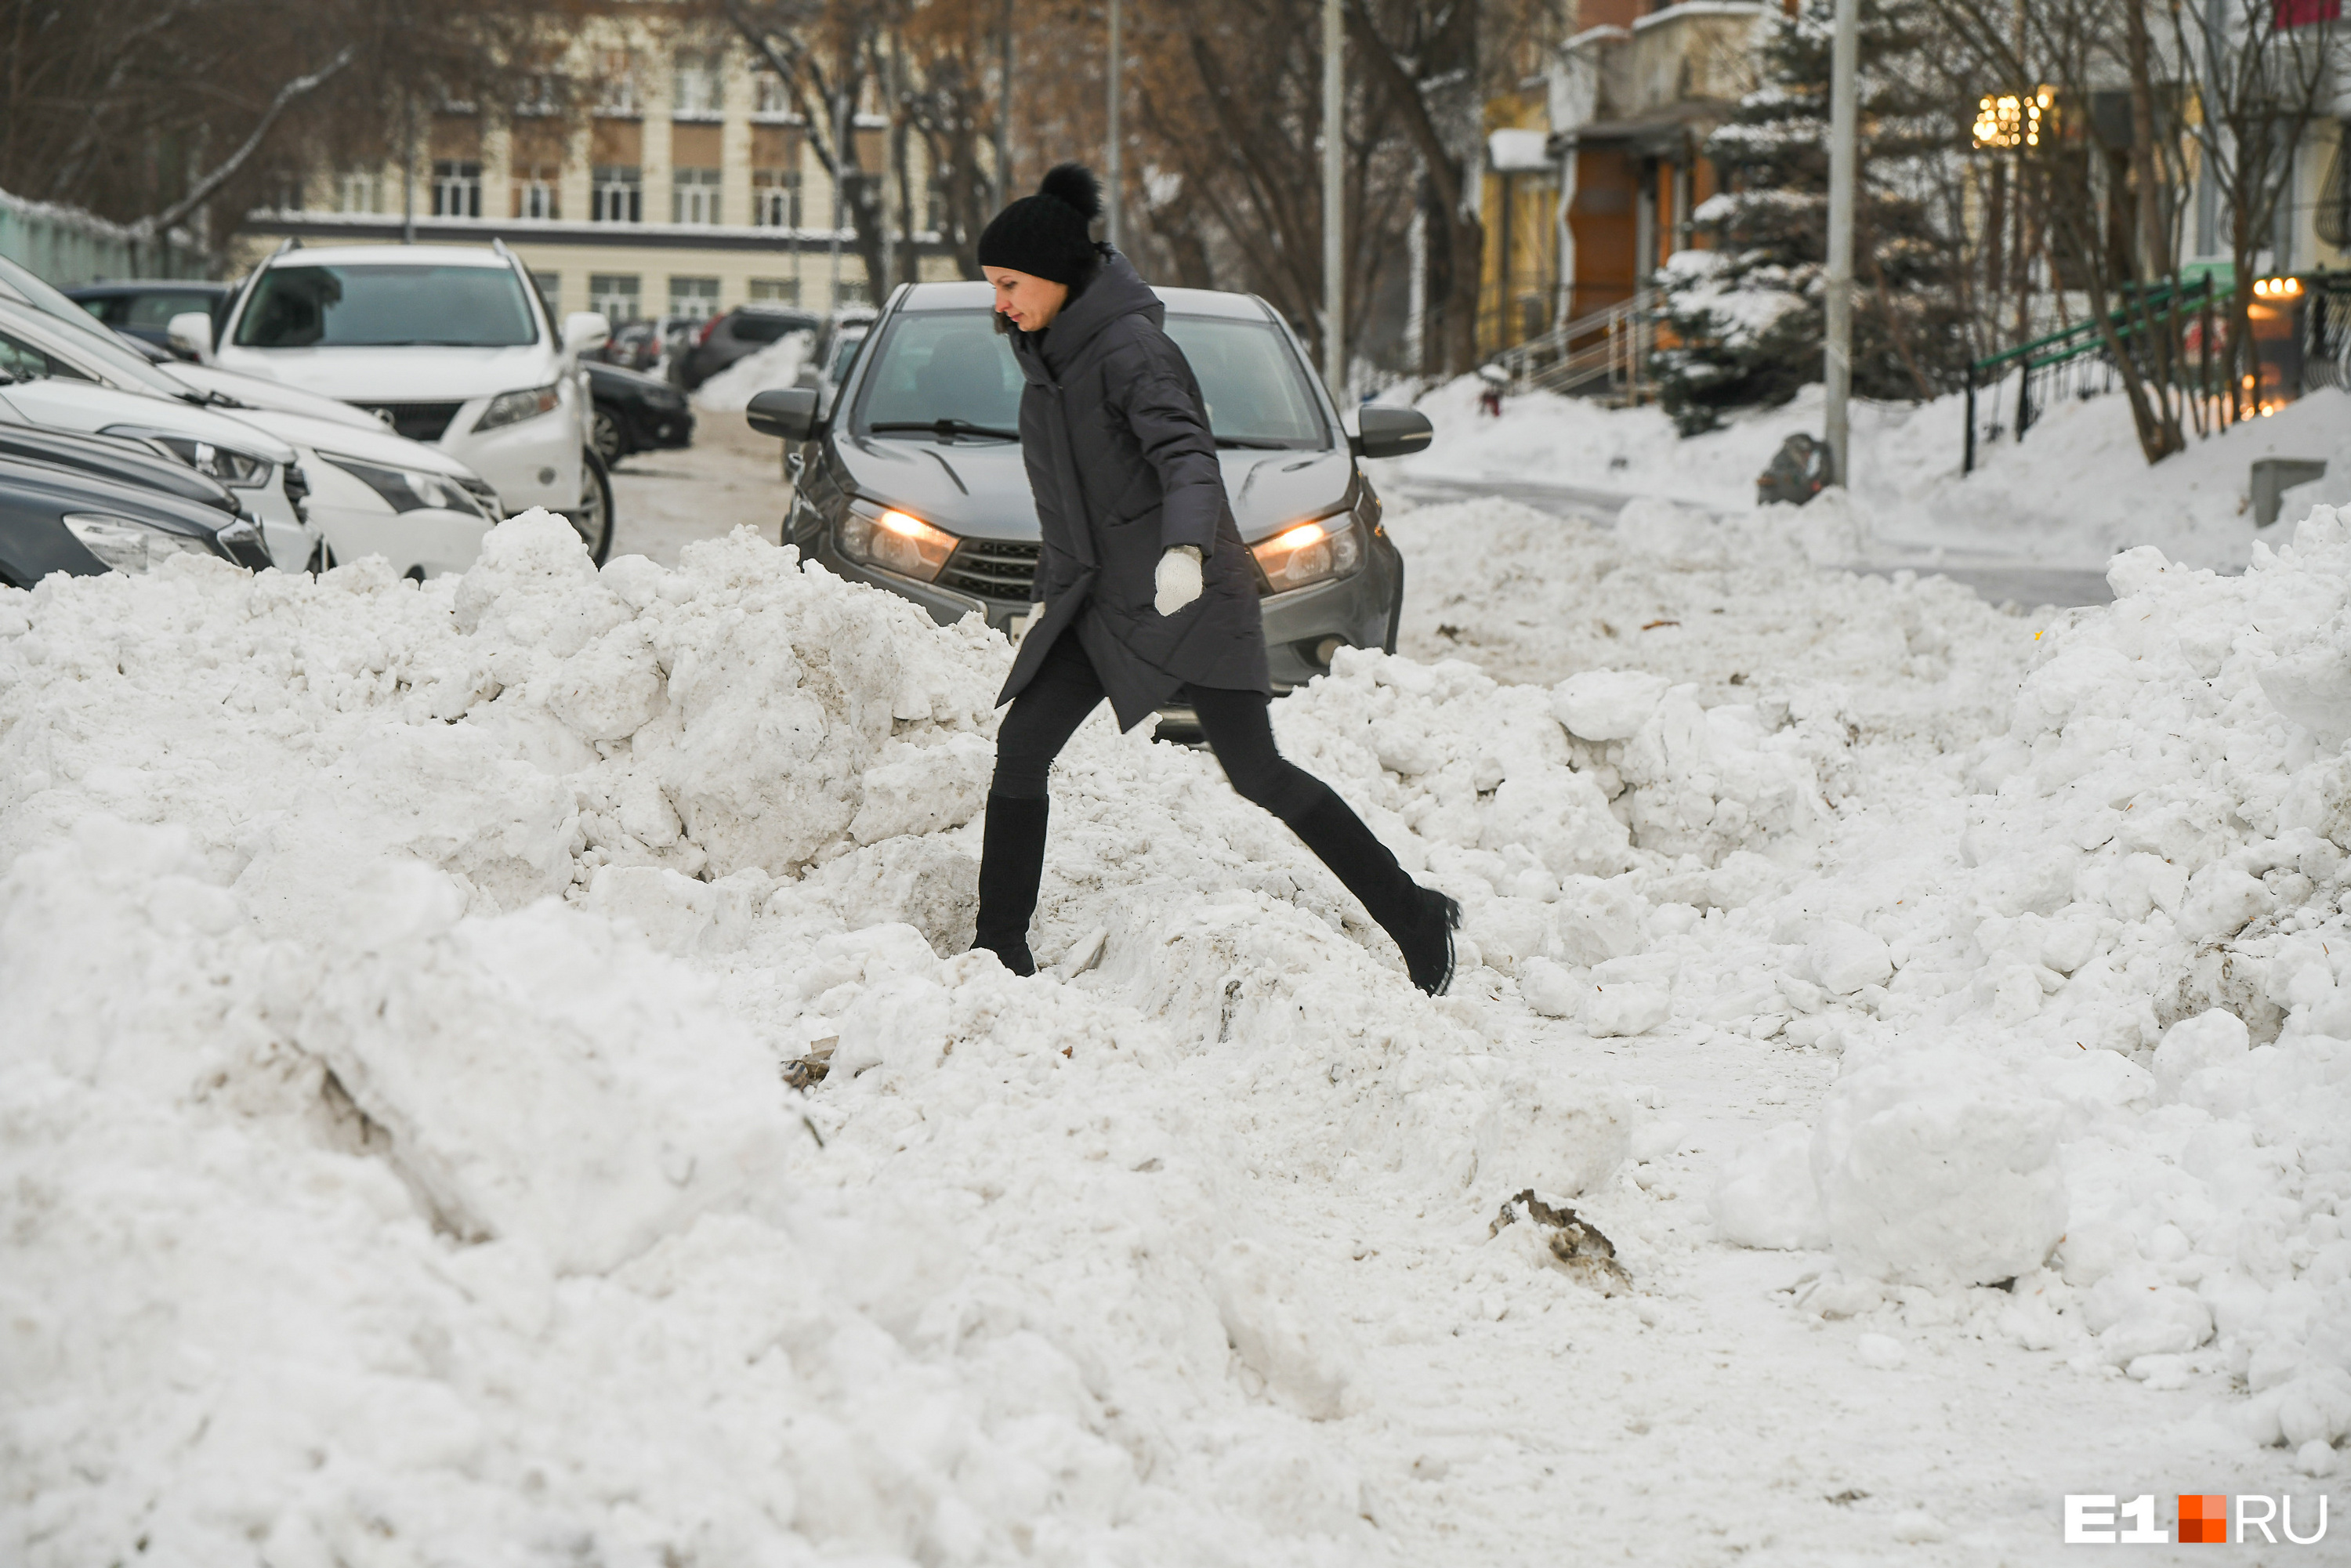 Пешеходы вынуждены преодолевать снежные завалы